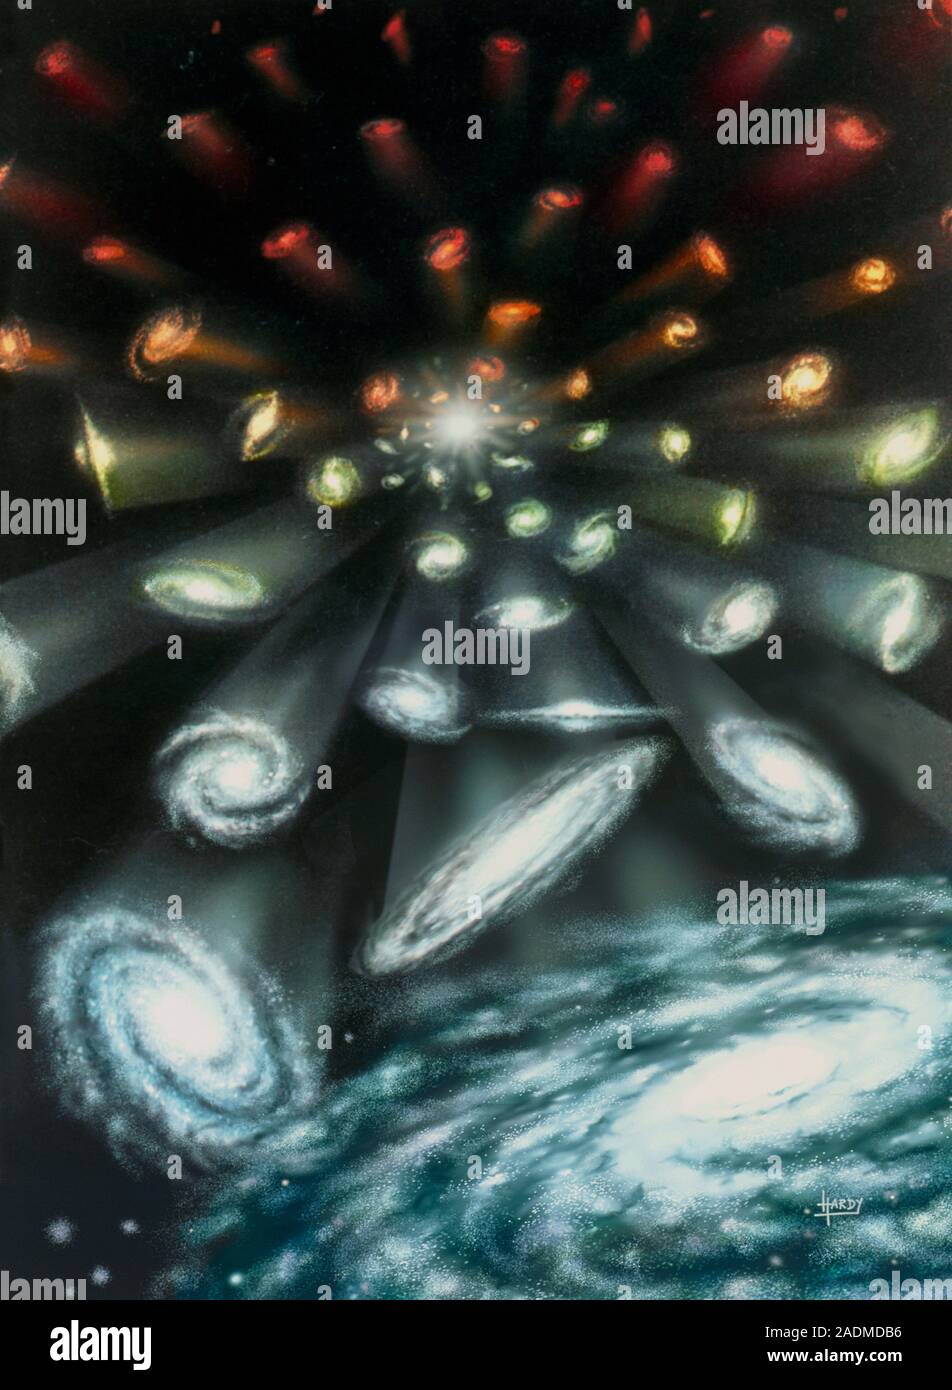 Espansione dell'universo. Illustrazione delle galassie espansione